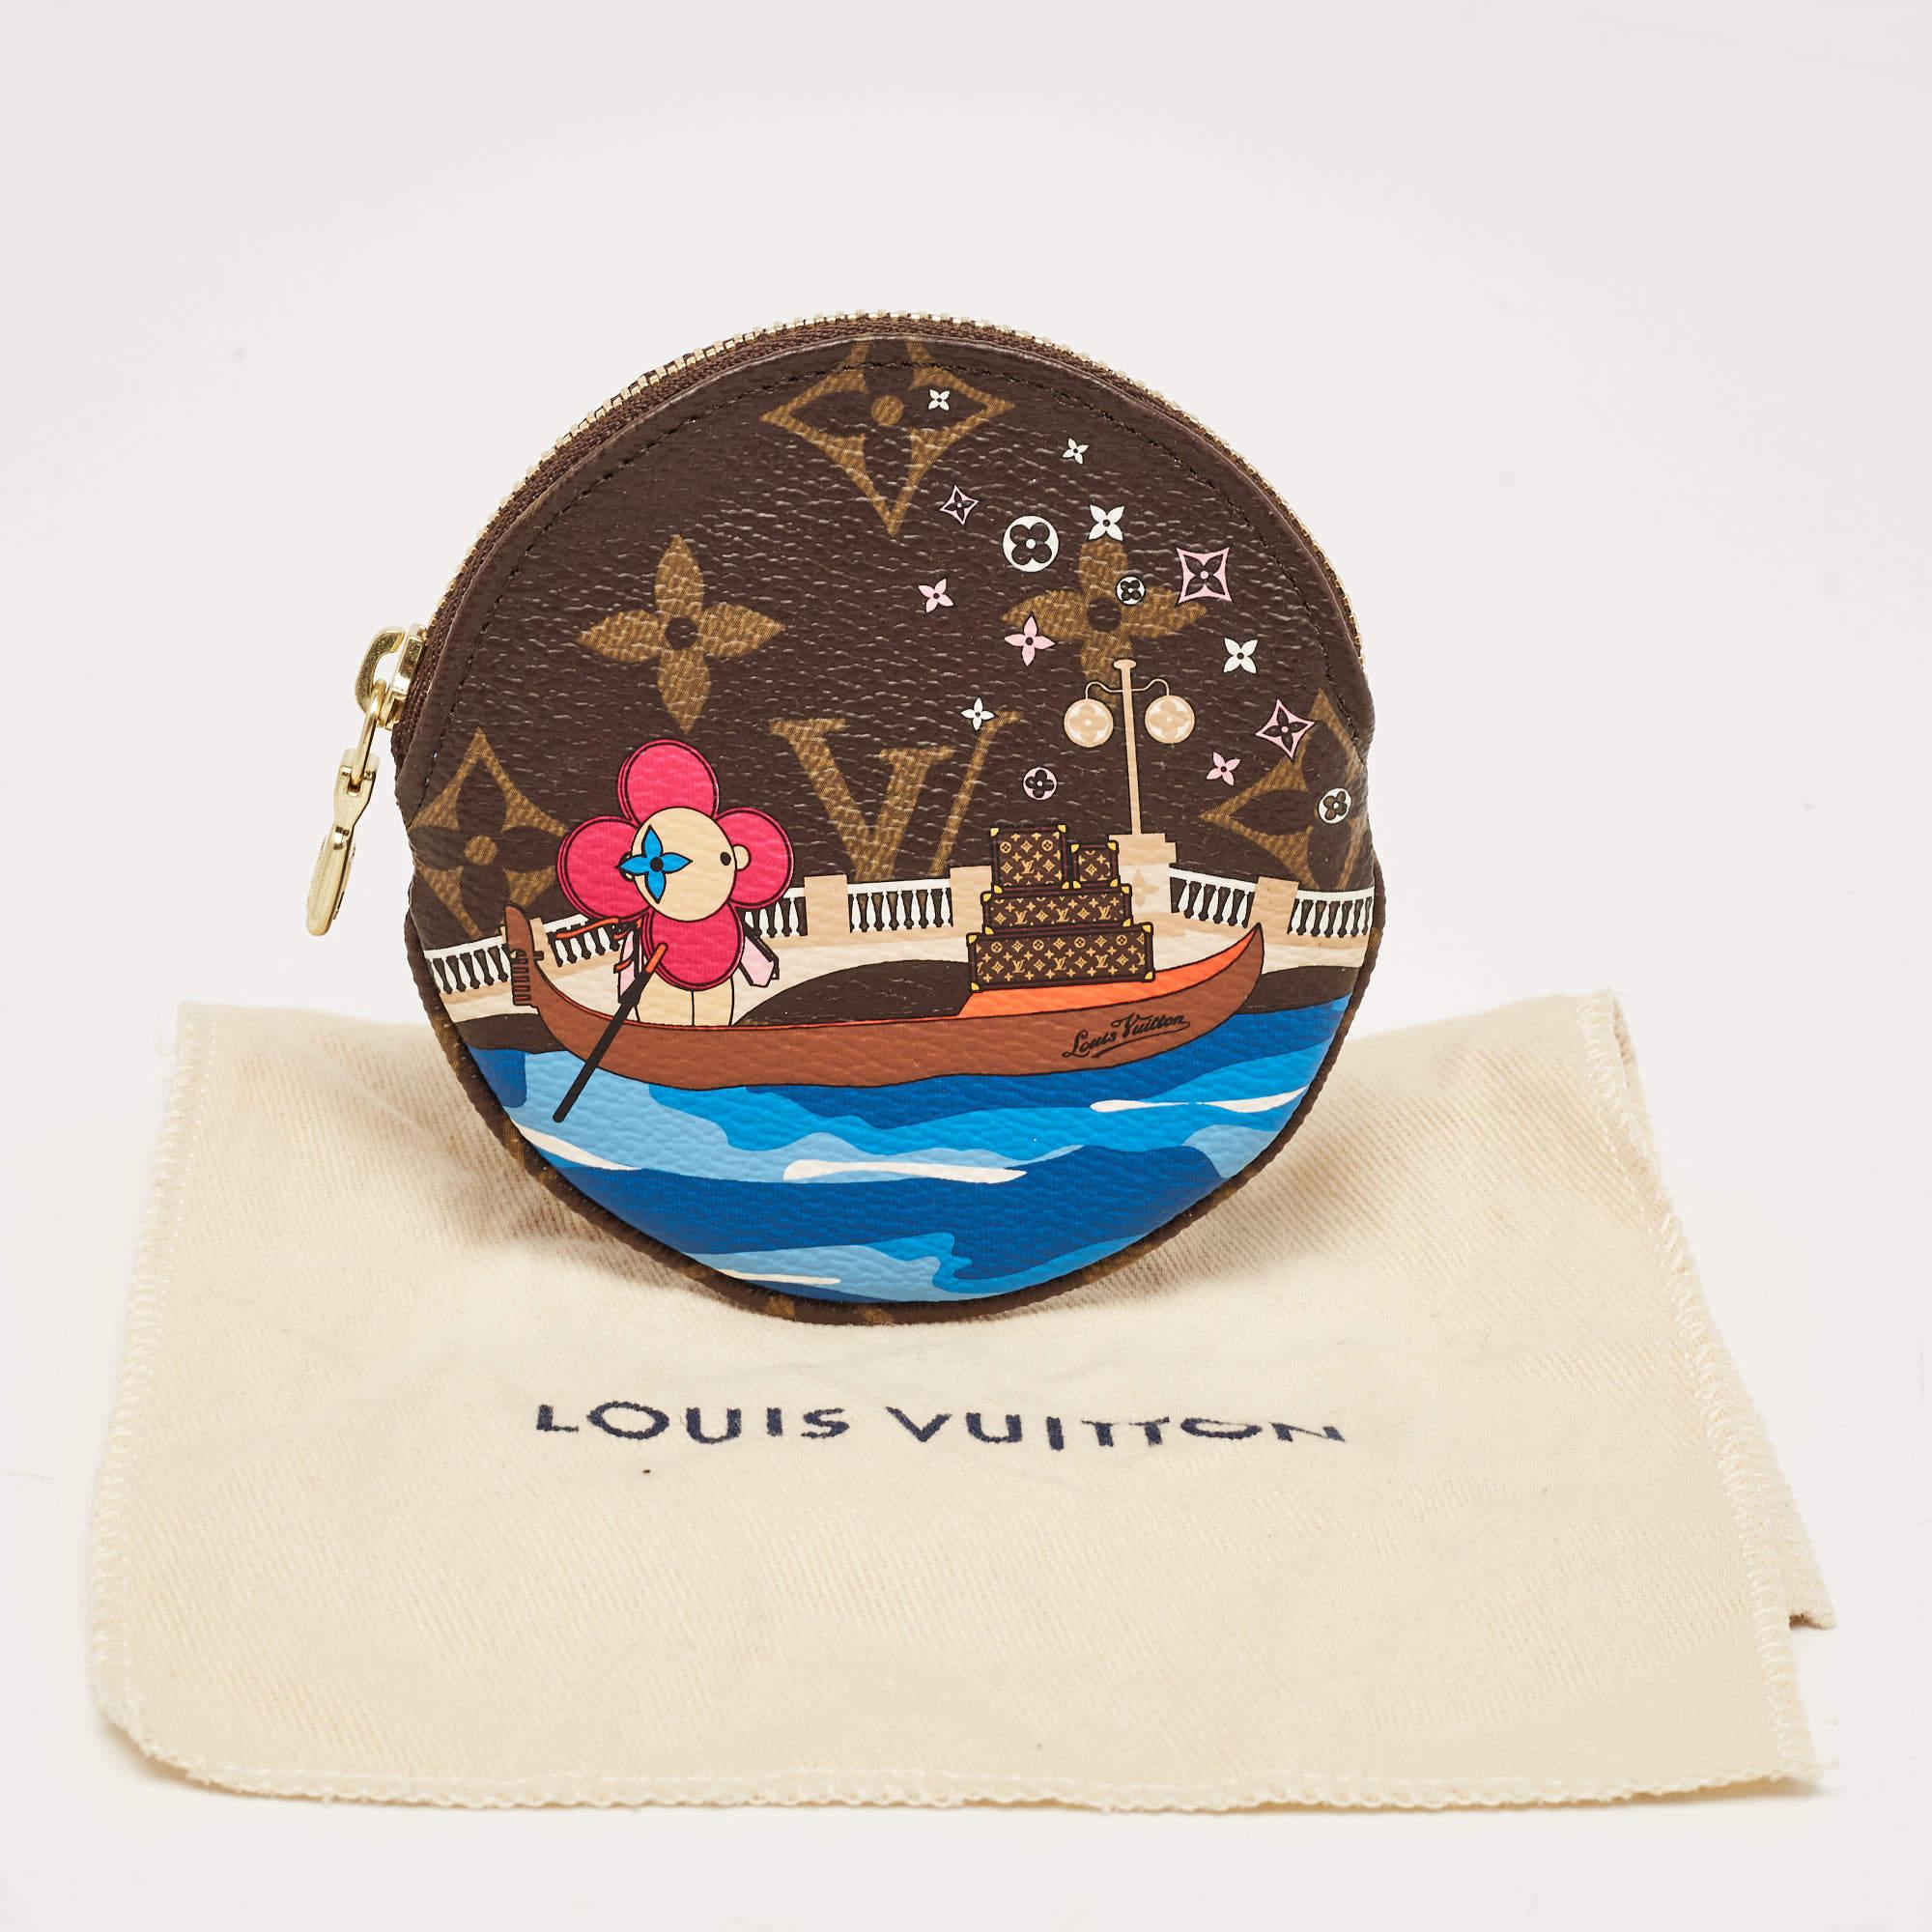 Louis Vuitton Monogram Canvas Christmas Vivienne Venice Coin Purse 2